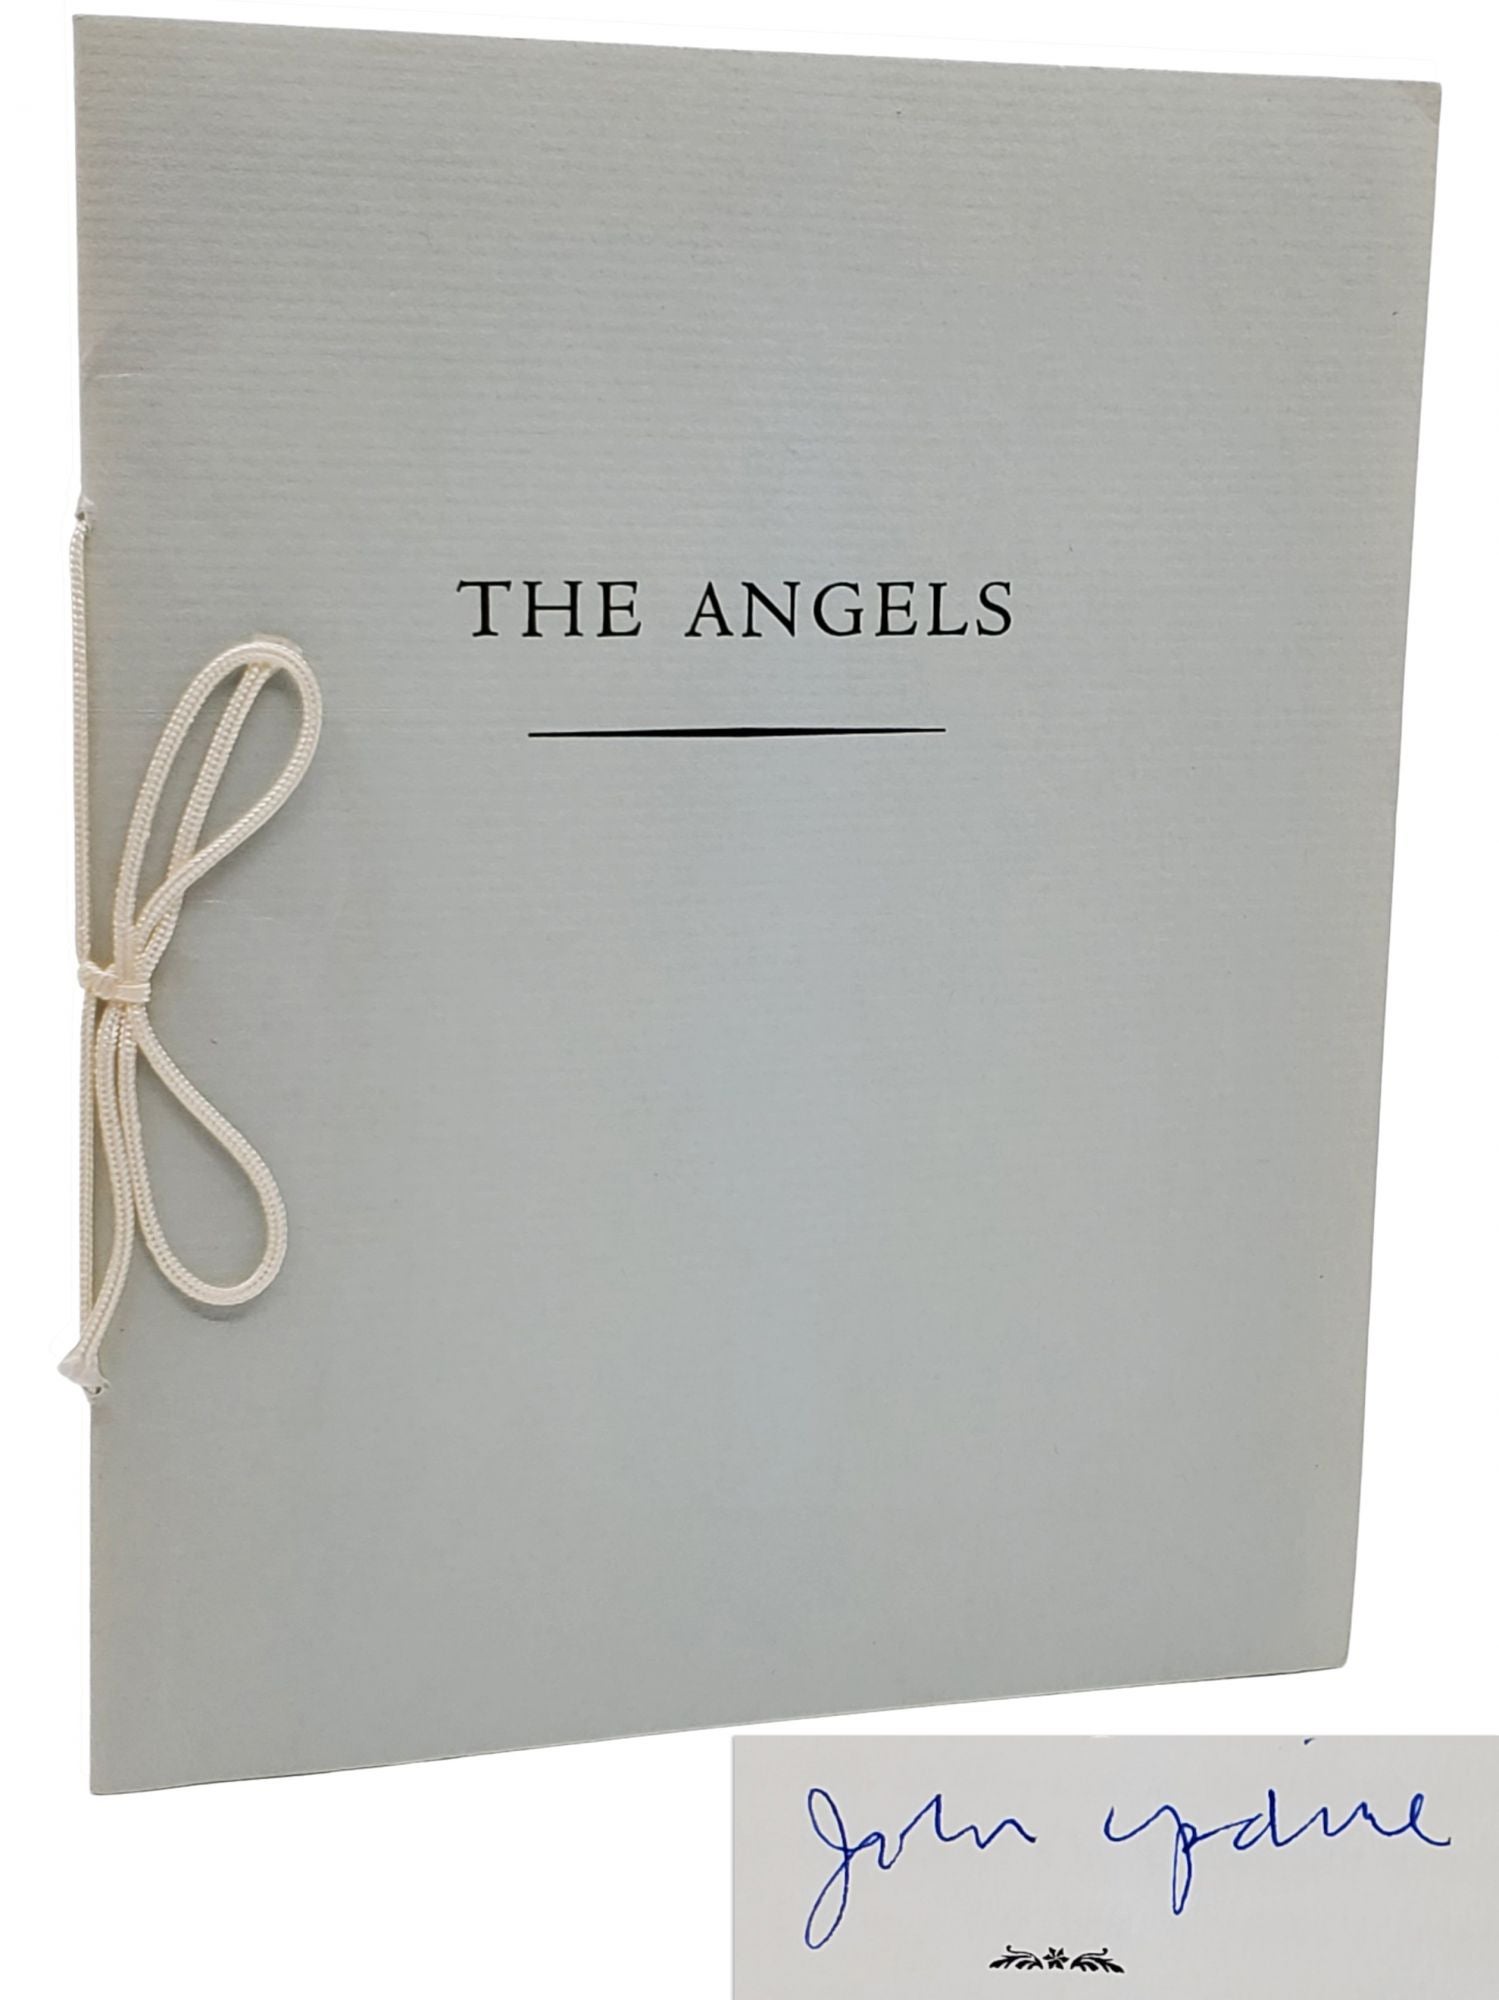 [Book #29424] THE ANGELS. John Updike.